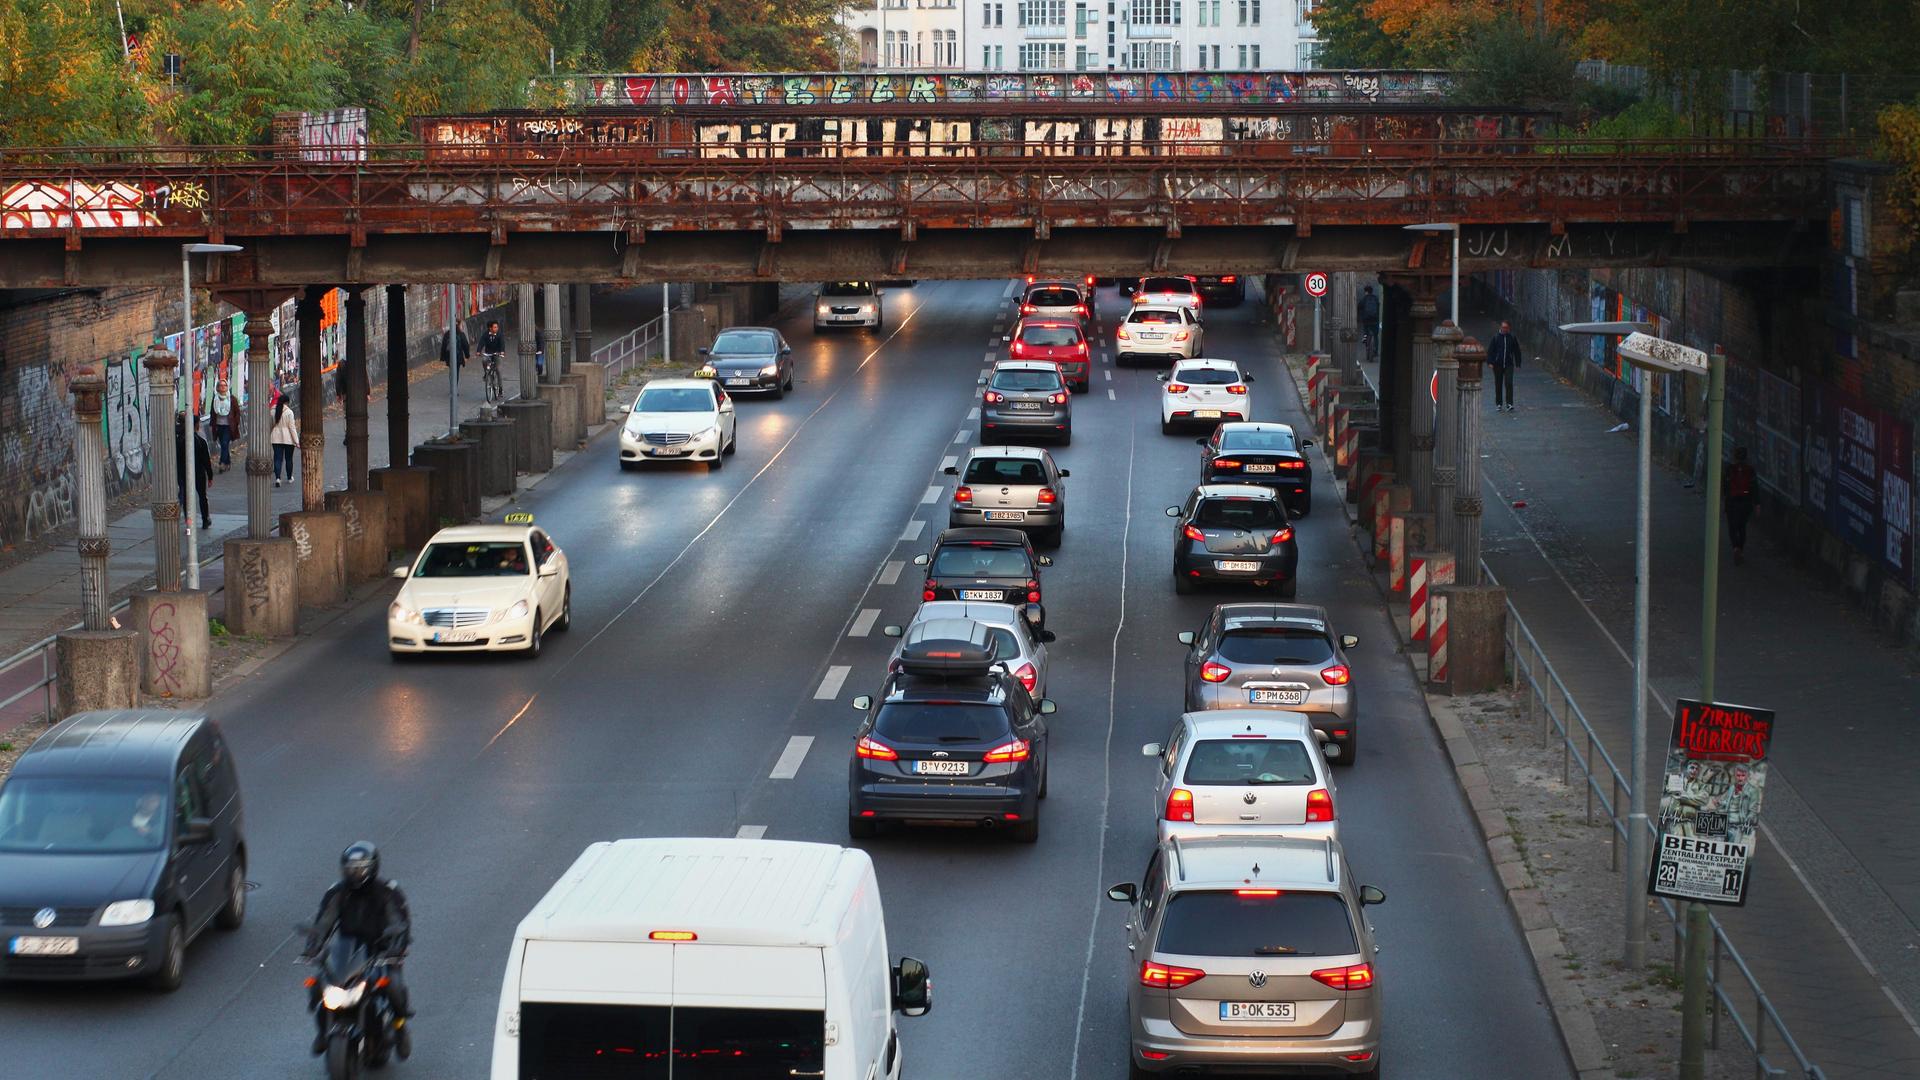 Auf dem Foto sieht man viele Autos in der Stadt Berlin.